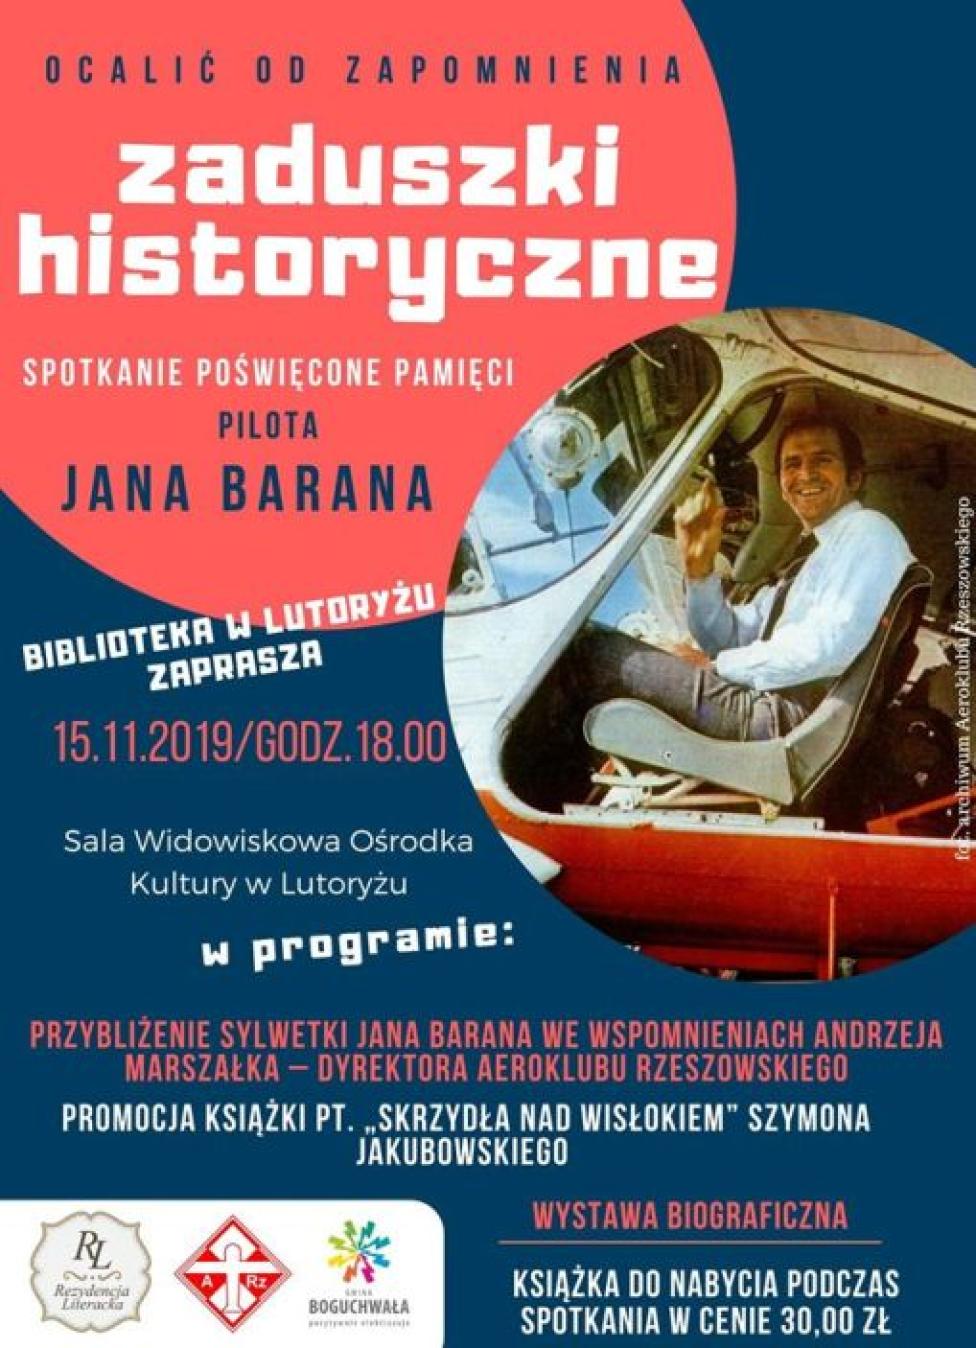 Zaduszki historyczne - spotkanie poświęcone pamięci pilota Jana Barana (fot. Gminna Biblioteka Publiczna Boguchwała)